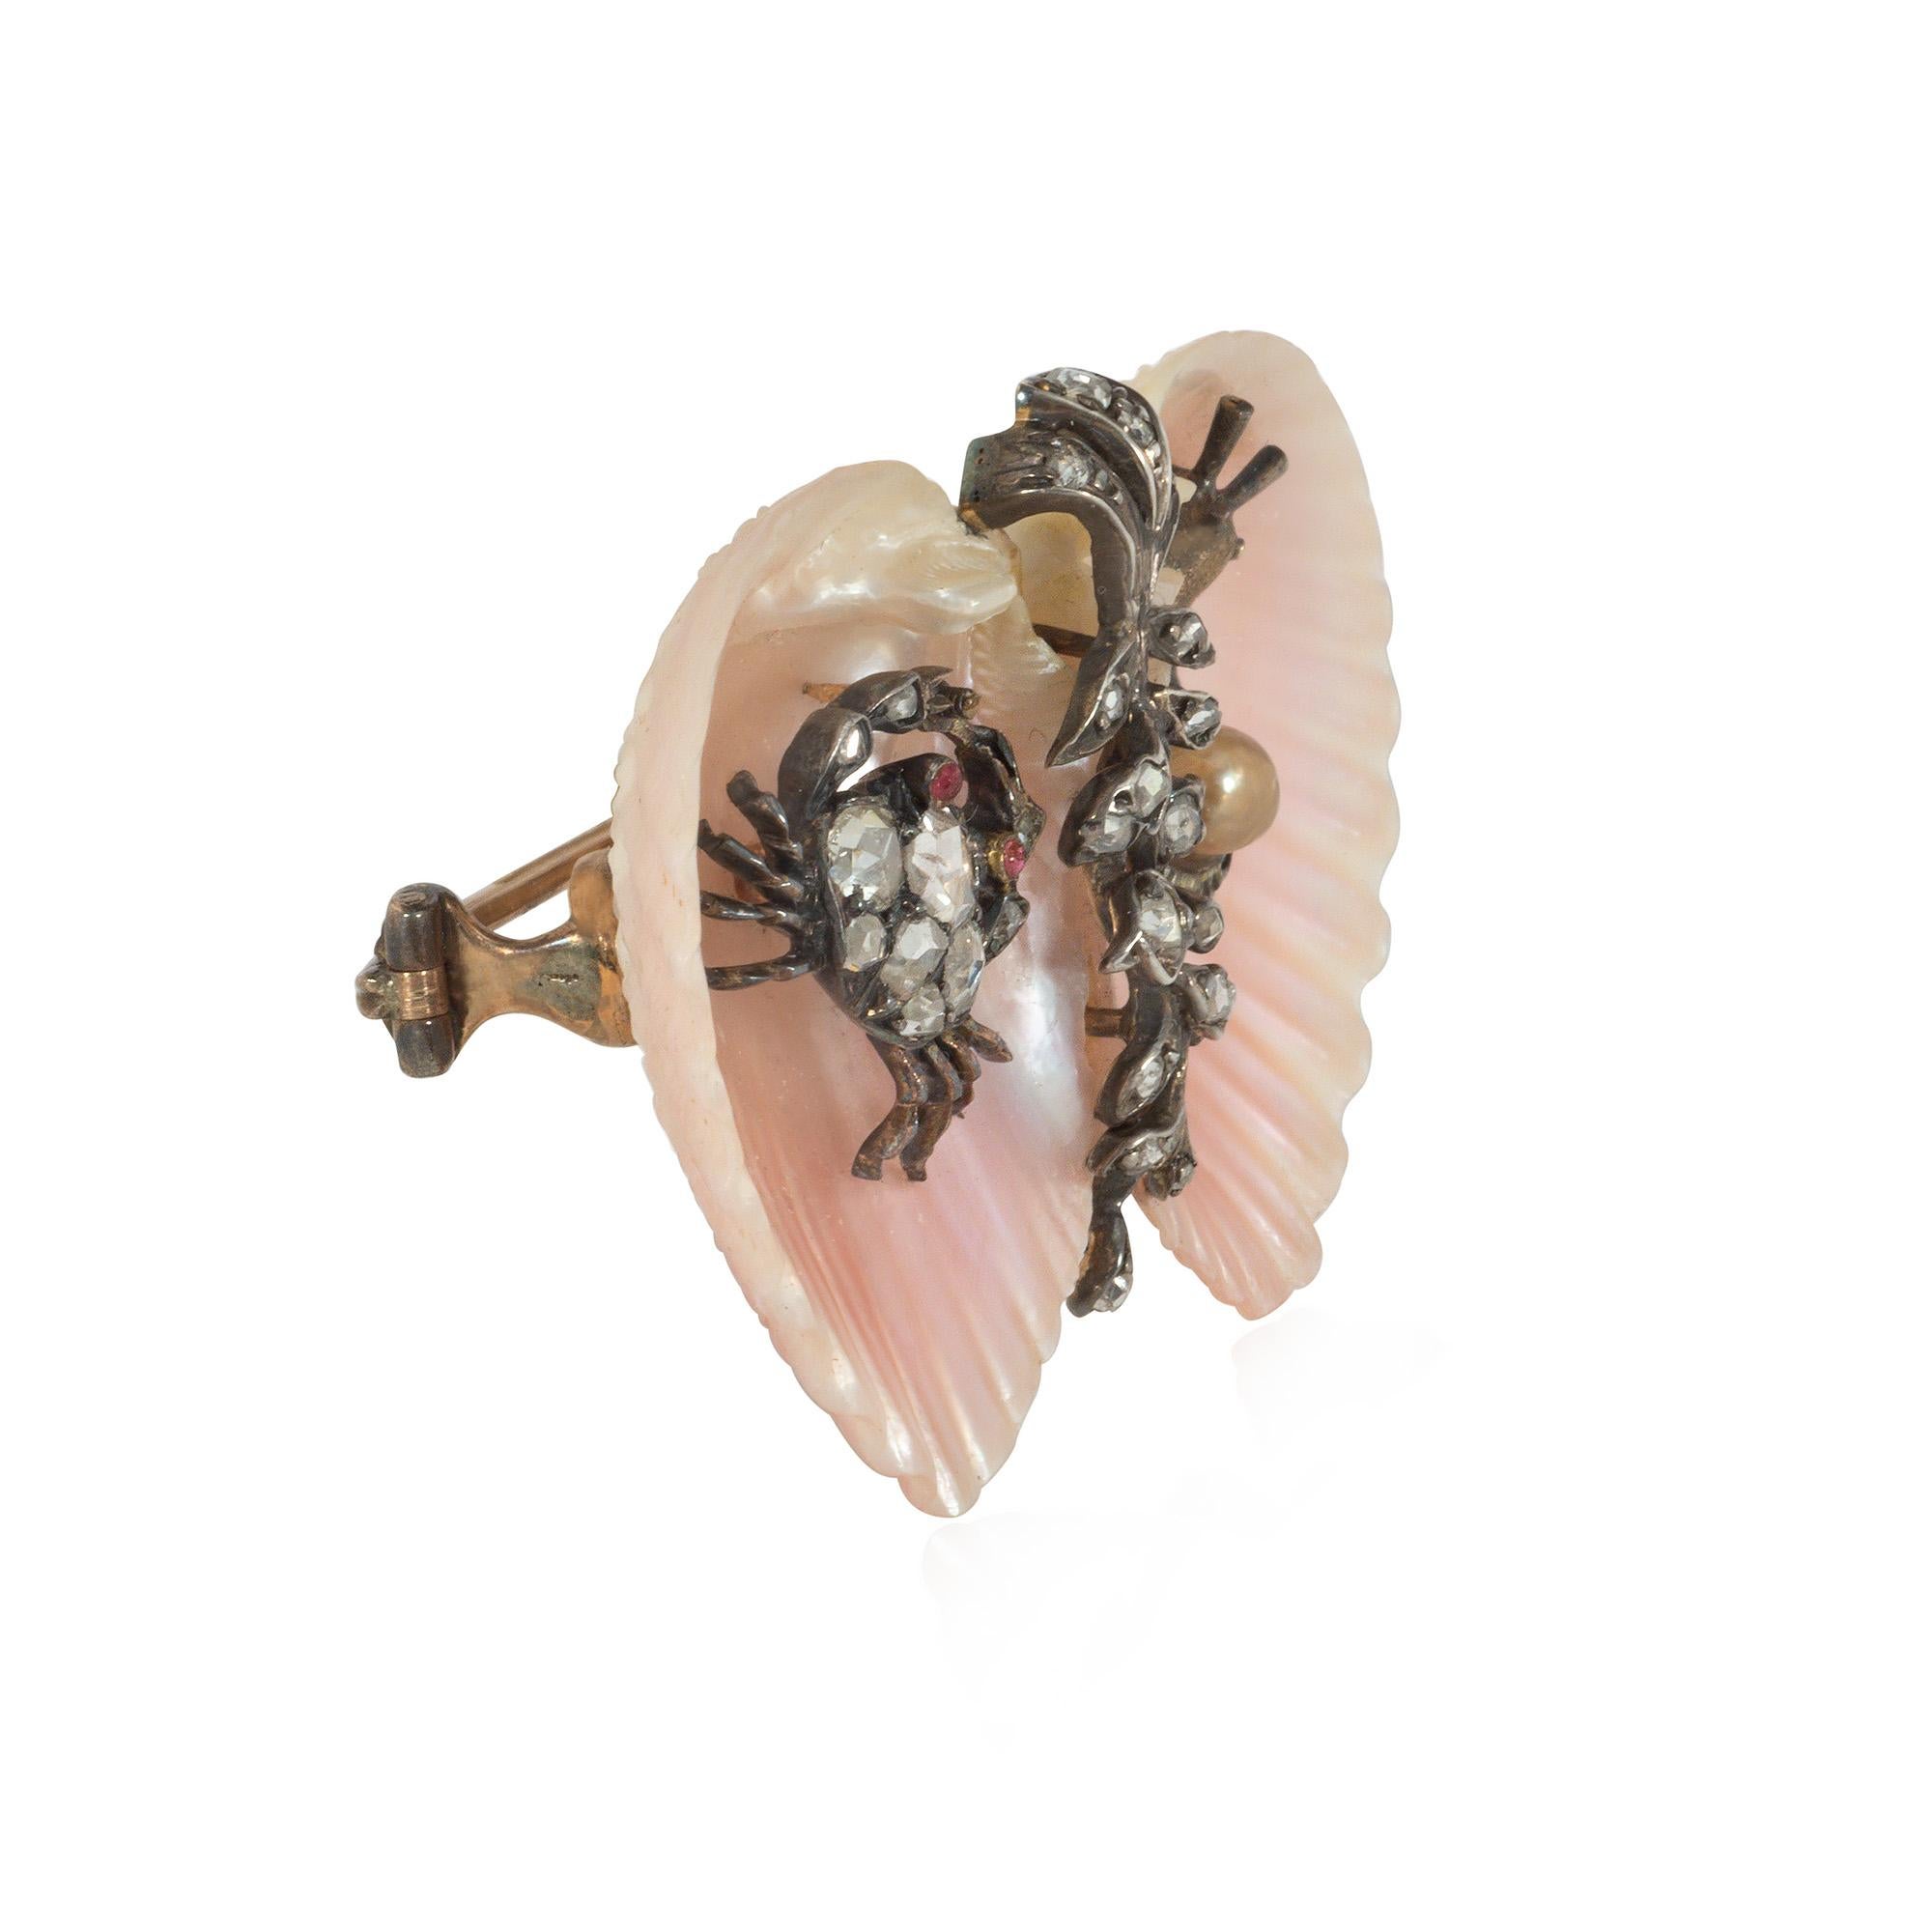 Eine antike viktorianische Muschel-, Edelstein- und Goldbrosche, bestehend aus zwei Muscheln, die durch einen diamantbesetzten Blumenstrauß verbunden sind und eine diamantbesetzte Krabbe mit Rubinaugen und eine diamantbesetzte Schnecke mit einer